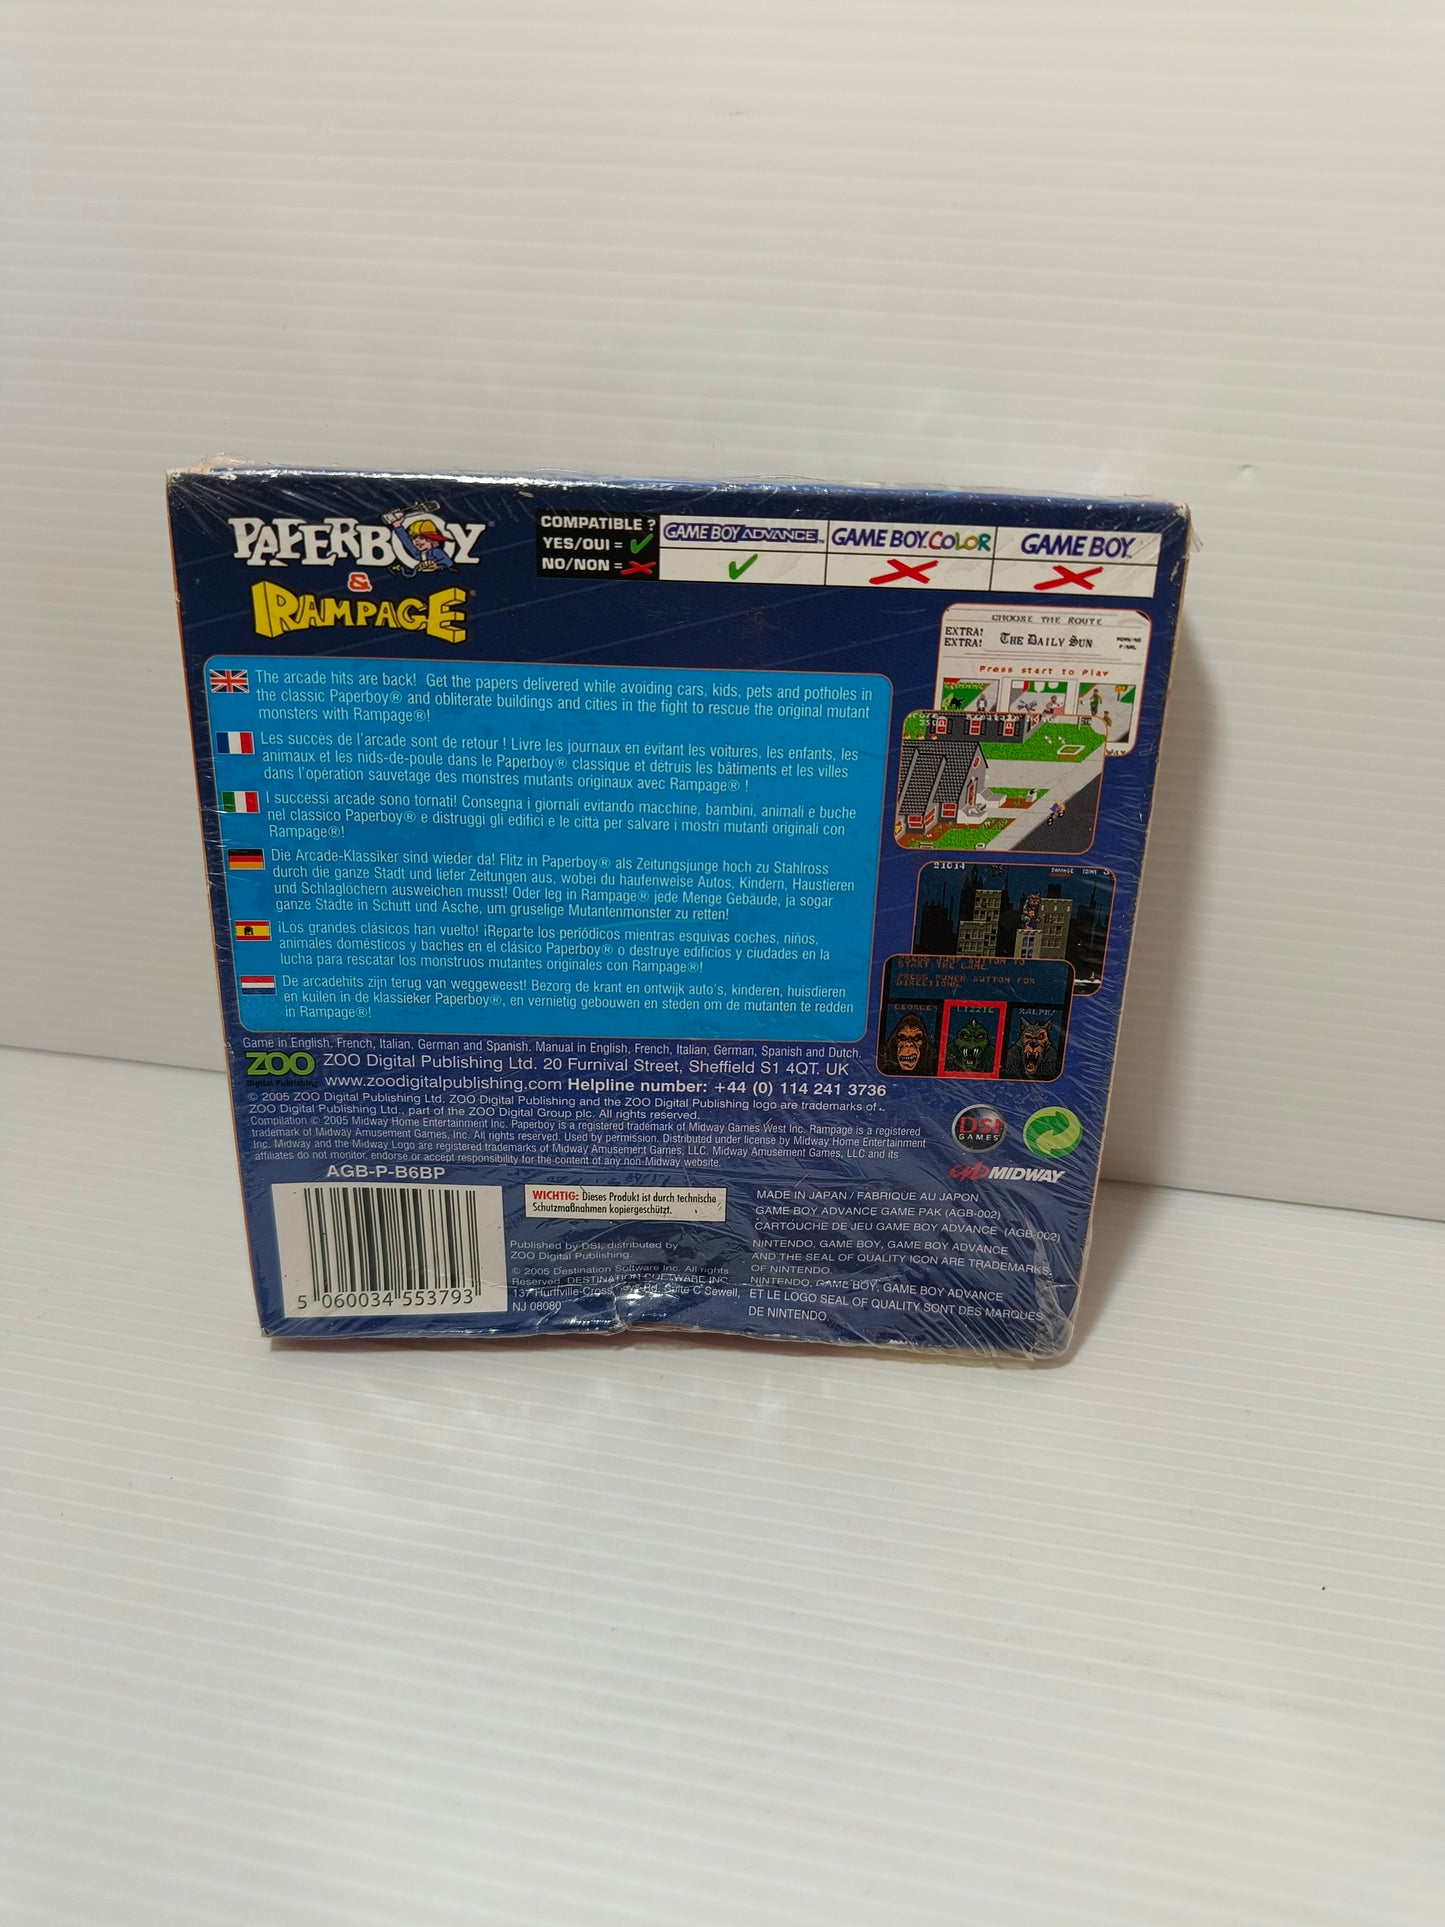 Videogioco Paperboy e Rampage per Game Boy Advance